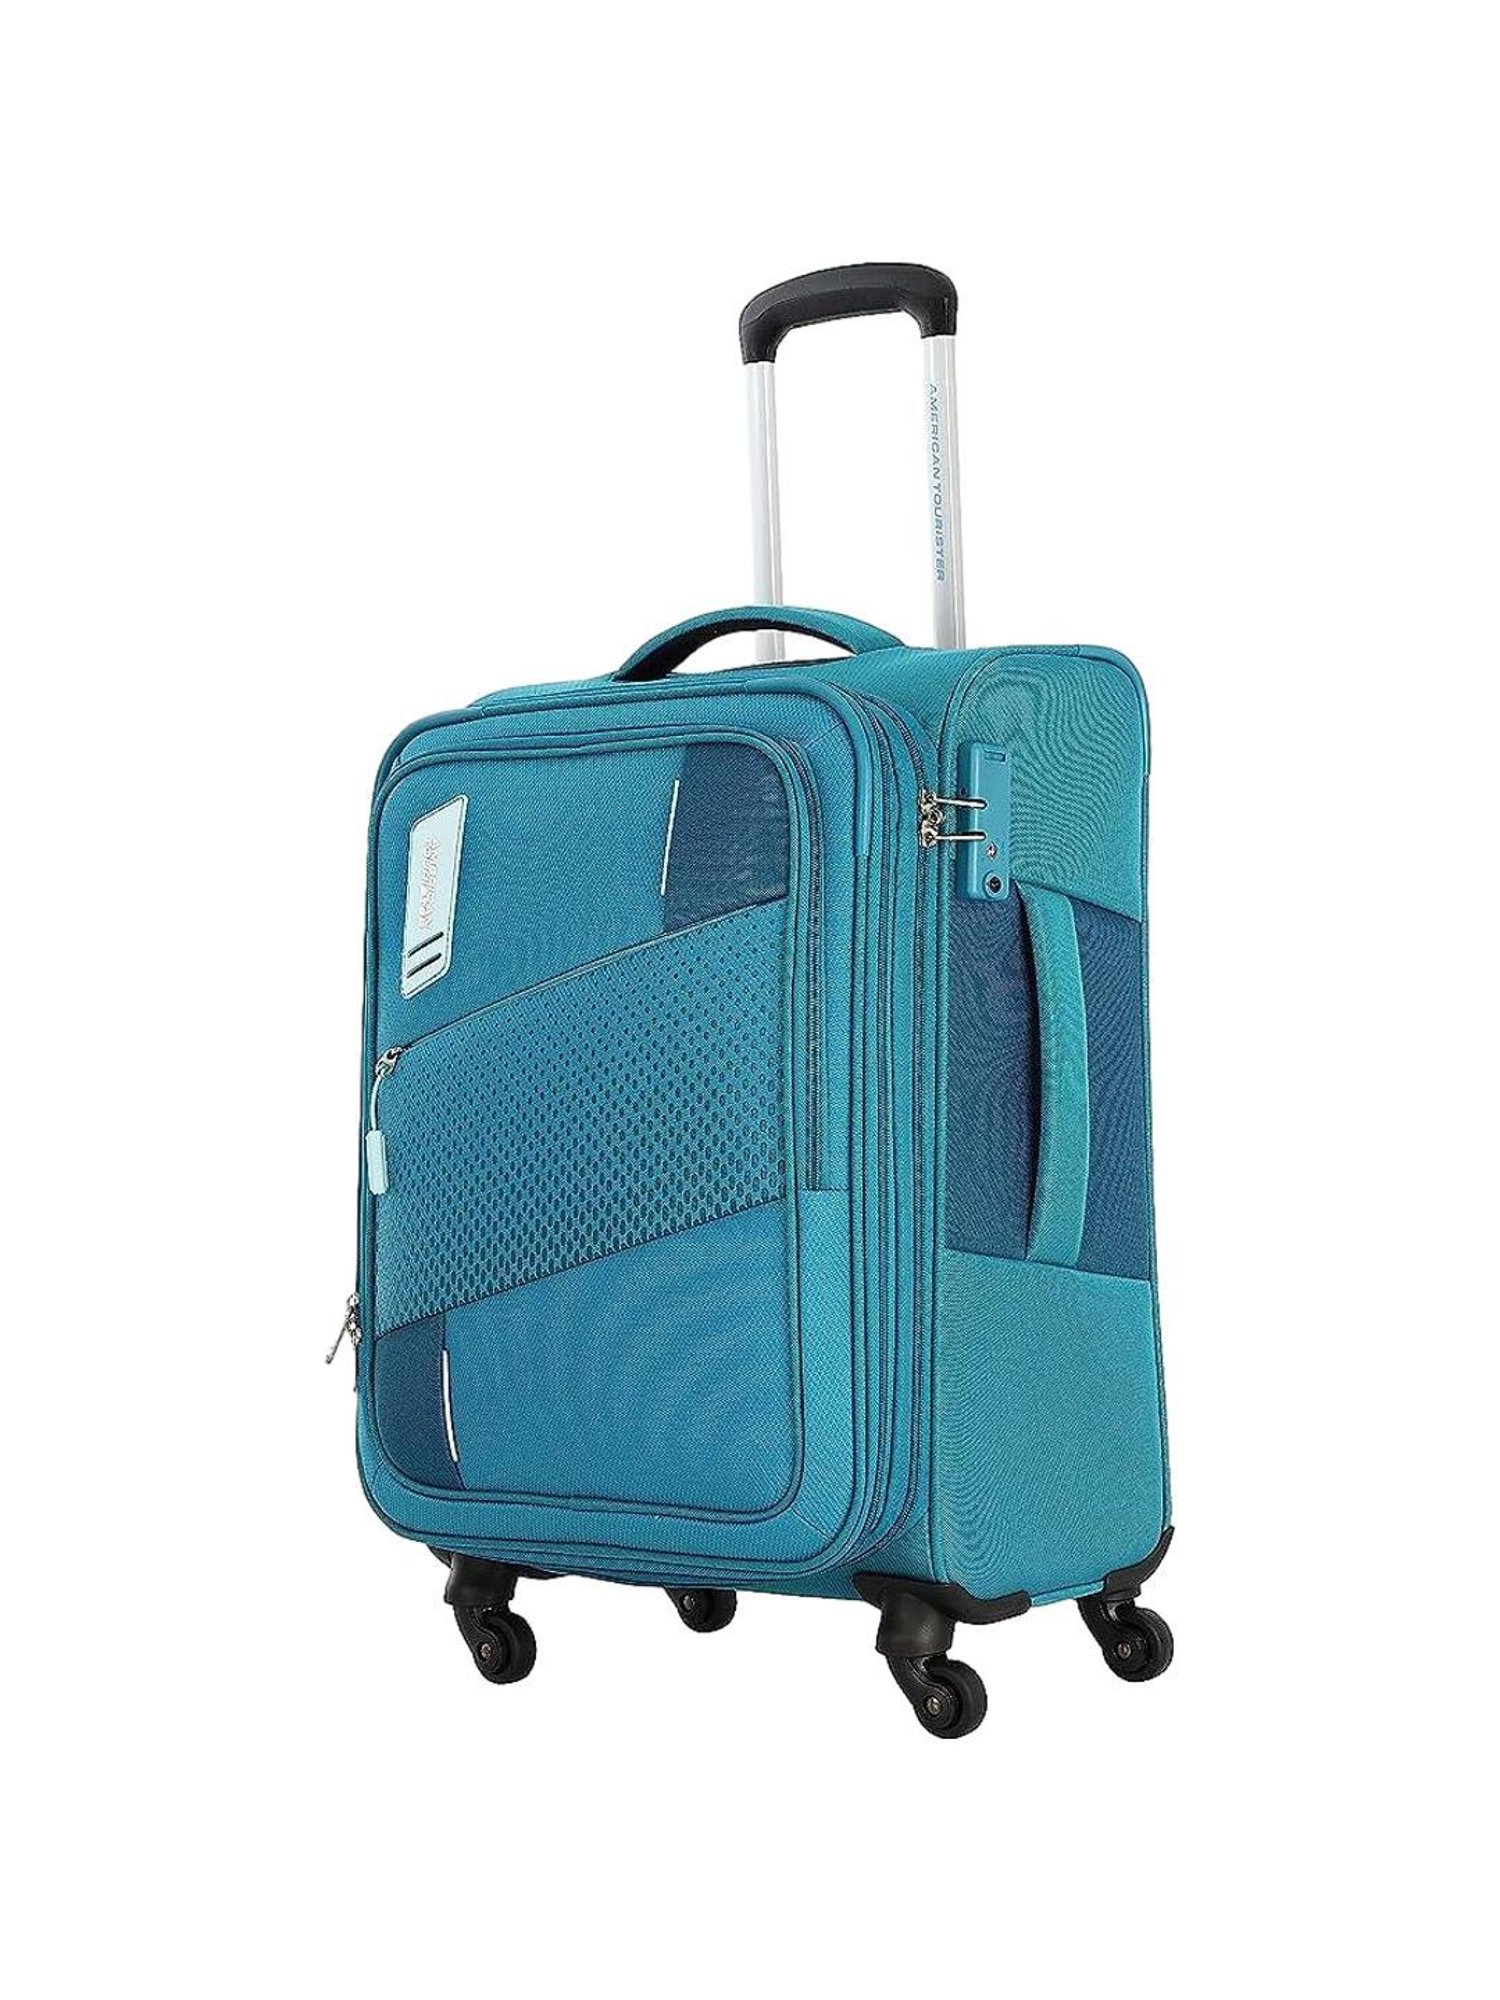 Trolley Bag Luggage - 20